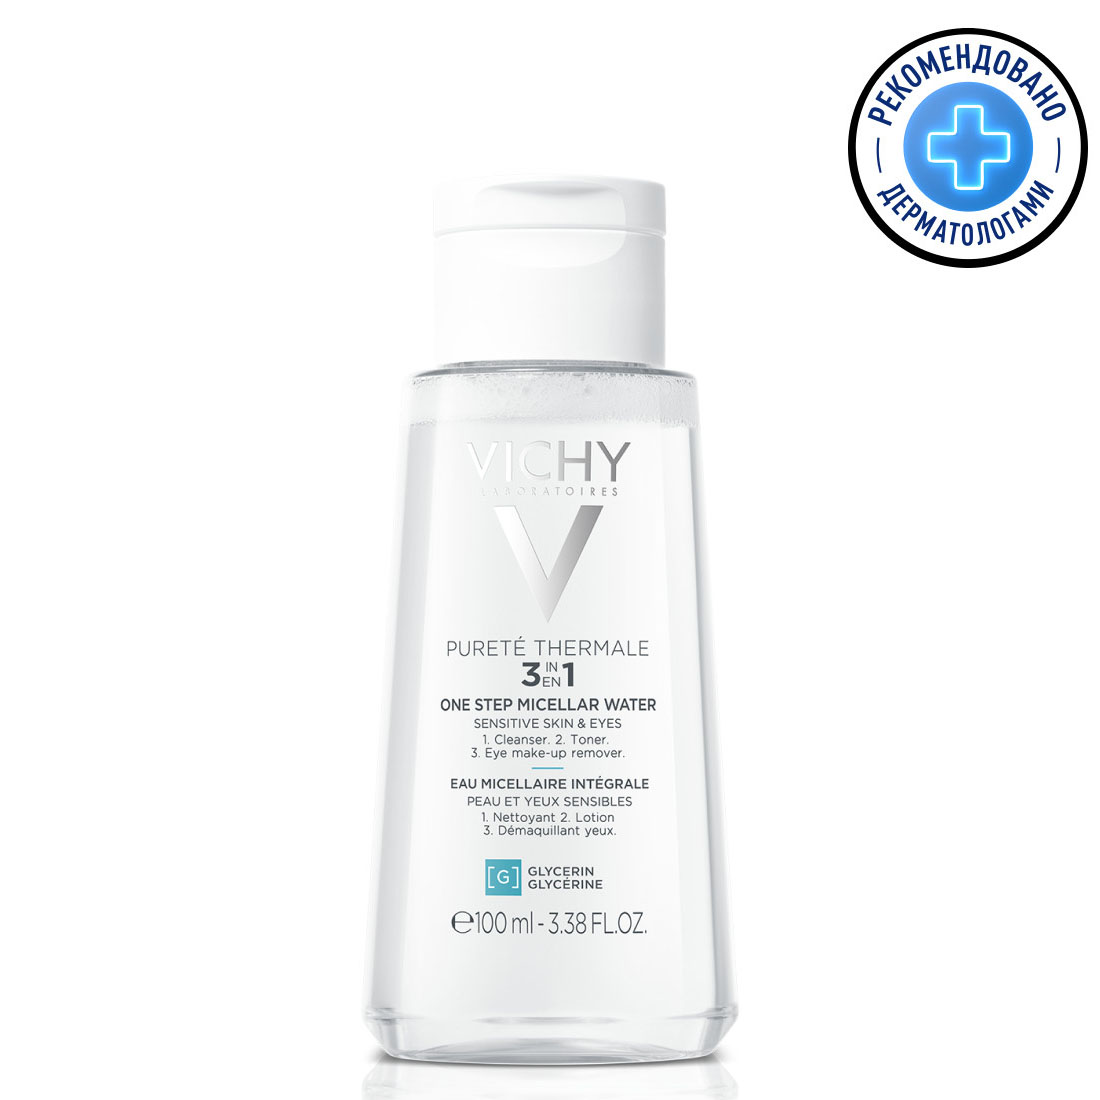 цена Vichy Мицеллярная вода универсальная для чувствительной кожи лица и вокруг глаз, 100 мл (Vichy, Purete Thermal)